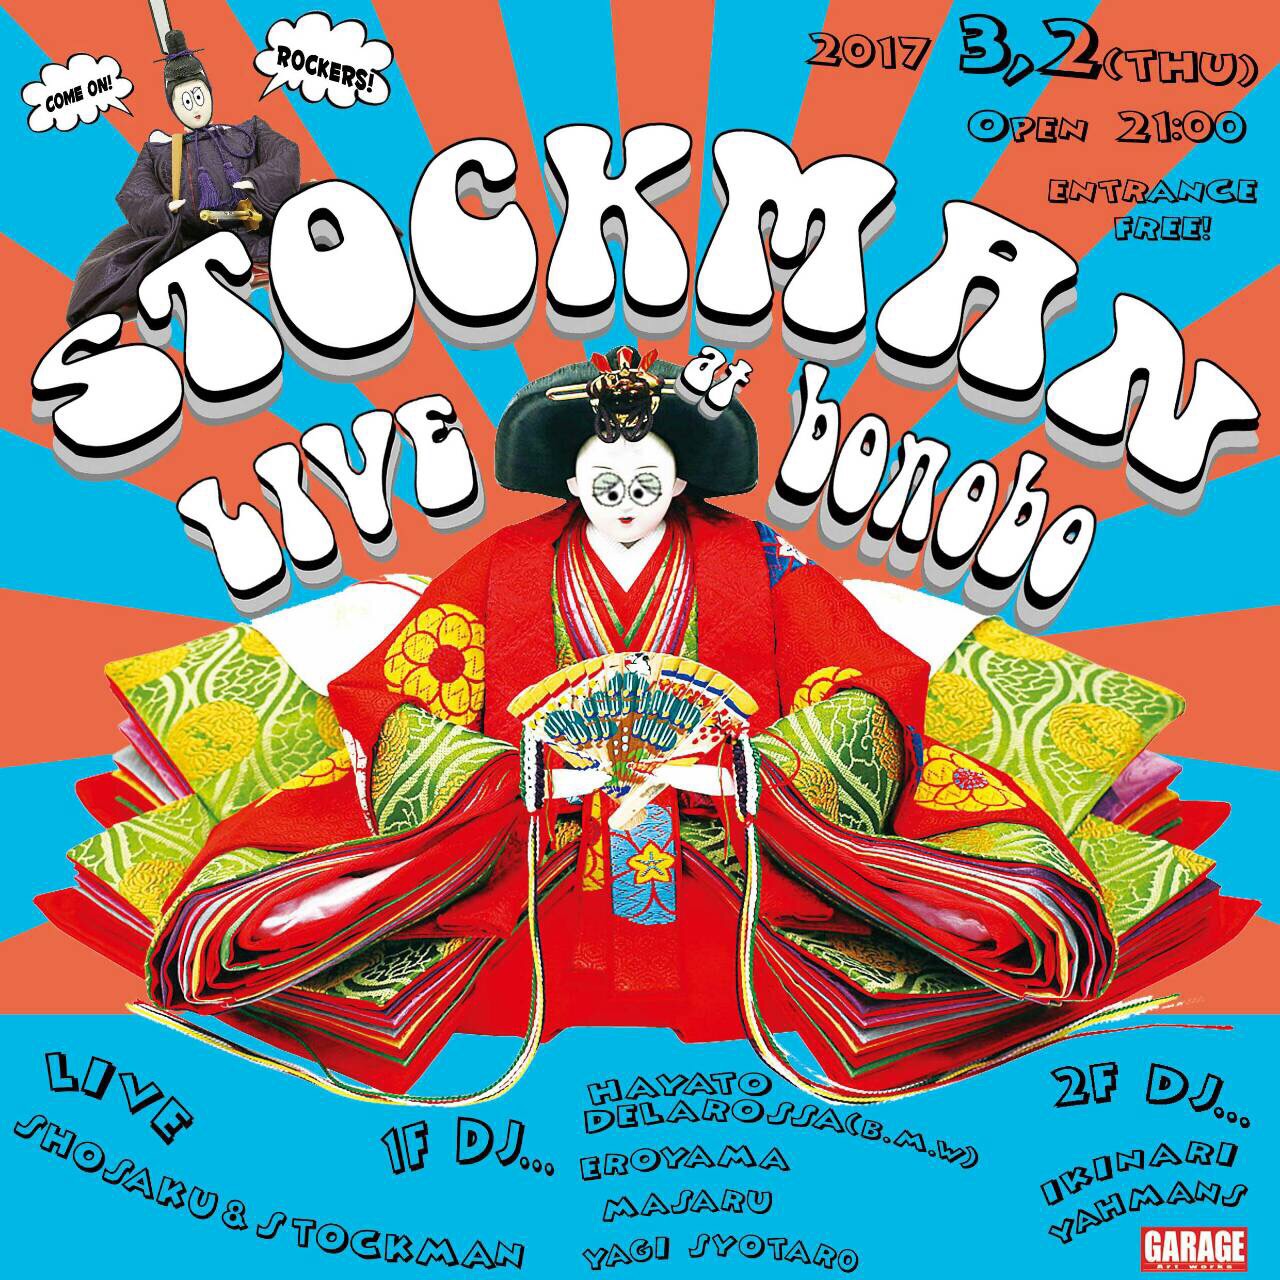 3/2(木) 原宿bonobo STOCKMAN presents… ”ラスボラヘテロモルファ”